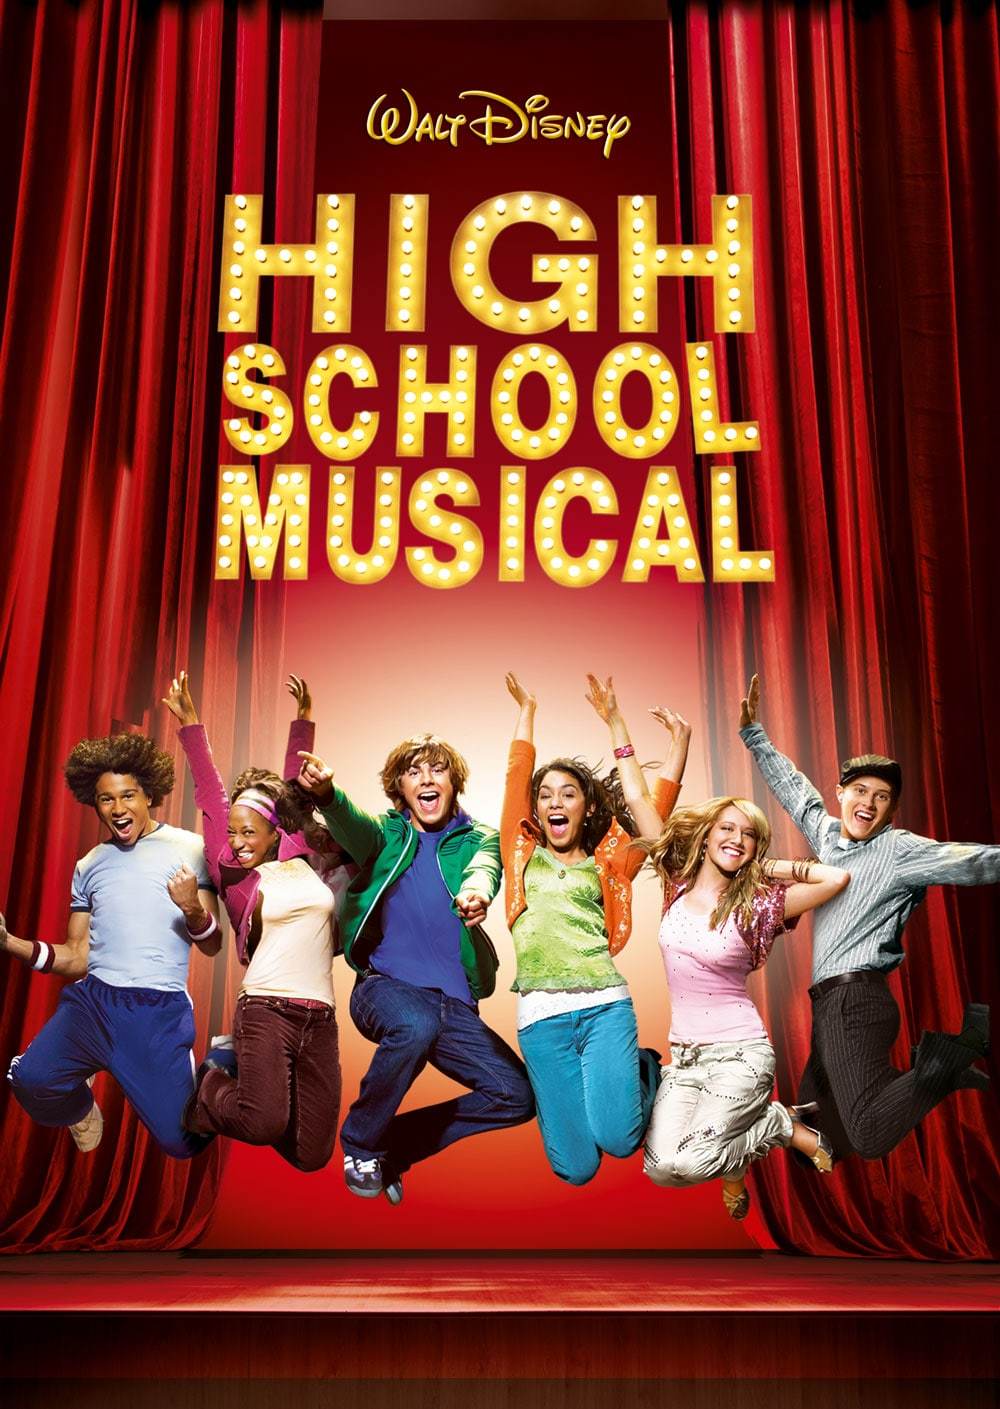  
High School Musical là bộ phim thương hiệu mỗi khi nhắc tới những tác phẩm của Walt Disney (Ảnh: Disney Movies)